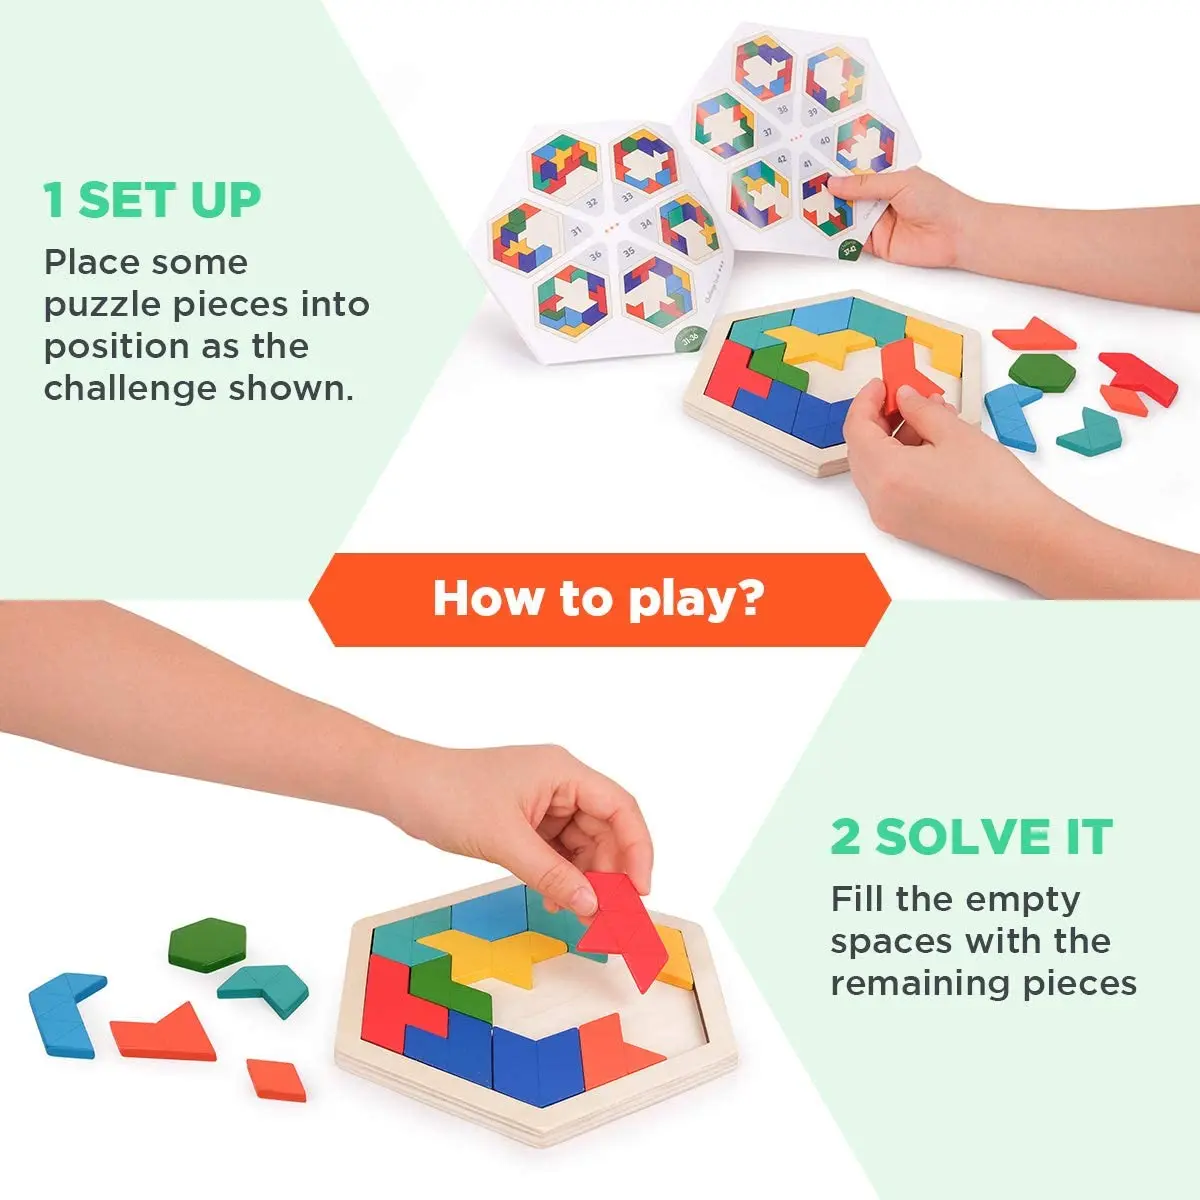 Quebra-cabeça de blocos de madeira para crianças de 4 a 8 anos, cérebro  teasers toy stem toy jogo cérebro